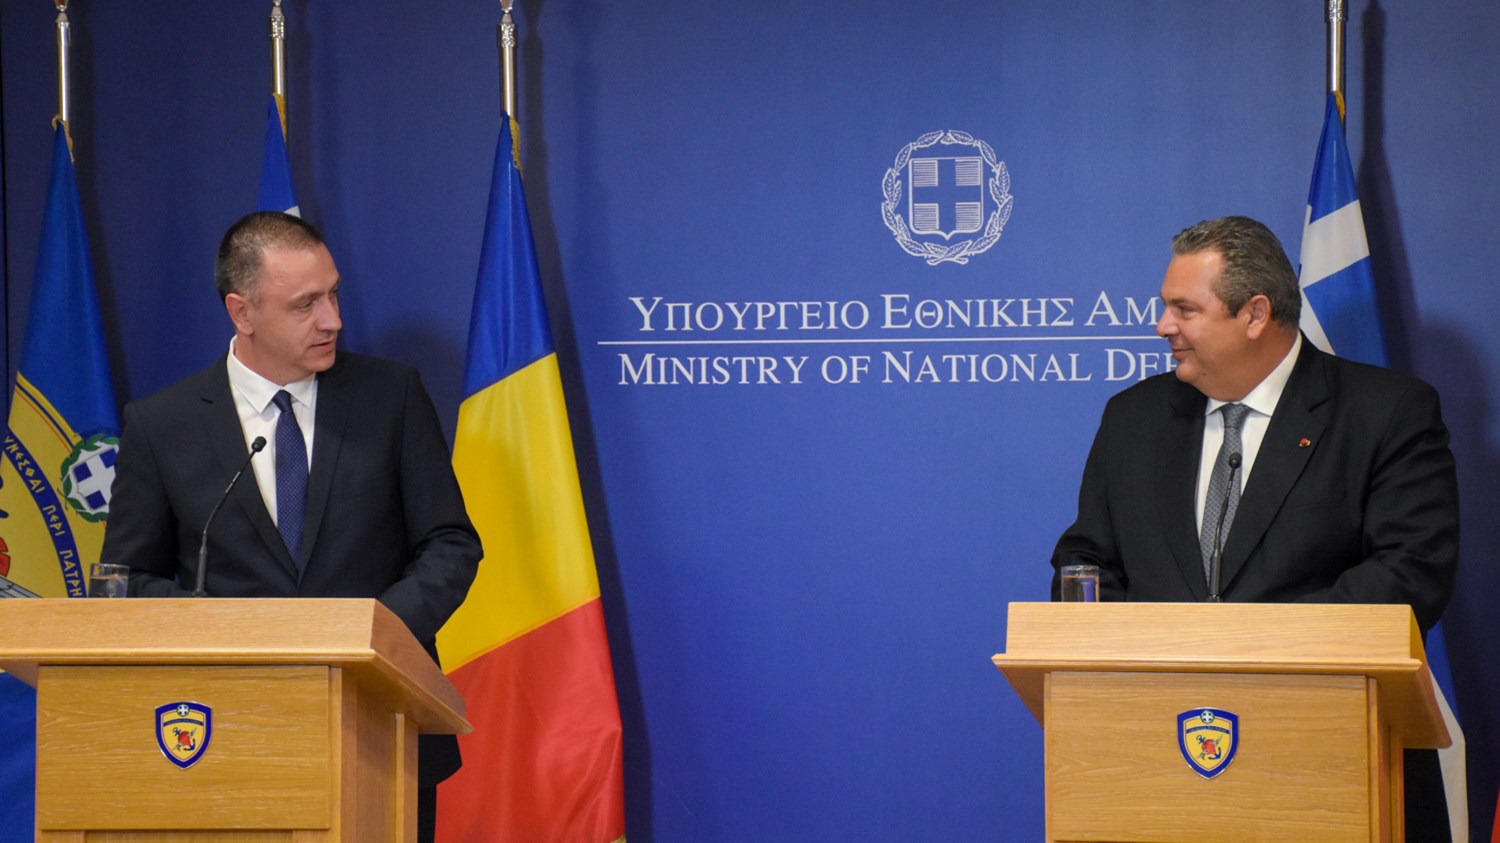 Καμμένος: Η Ρουμανία και η Ελλάδα έχουν άριστες και ιστορικές σχέσεις σε όλους τους τομείς